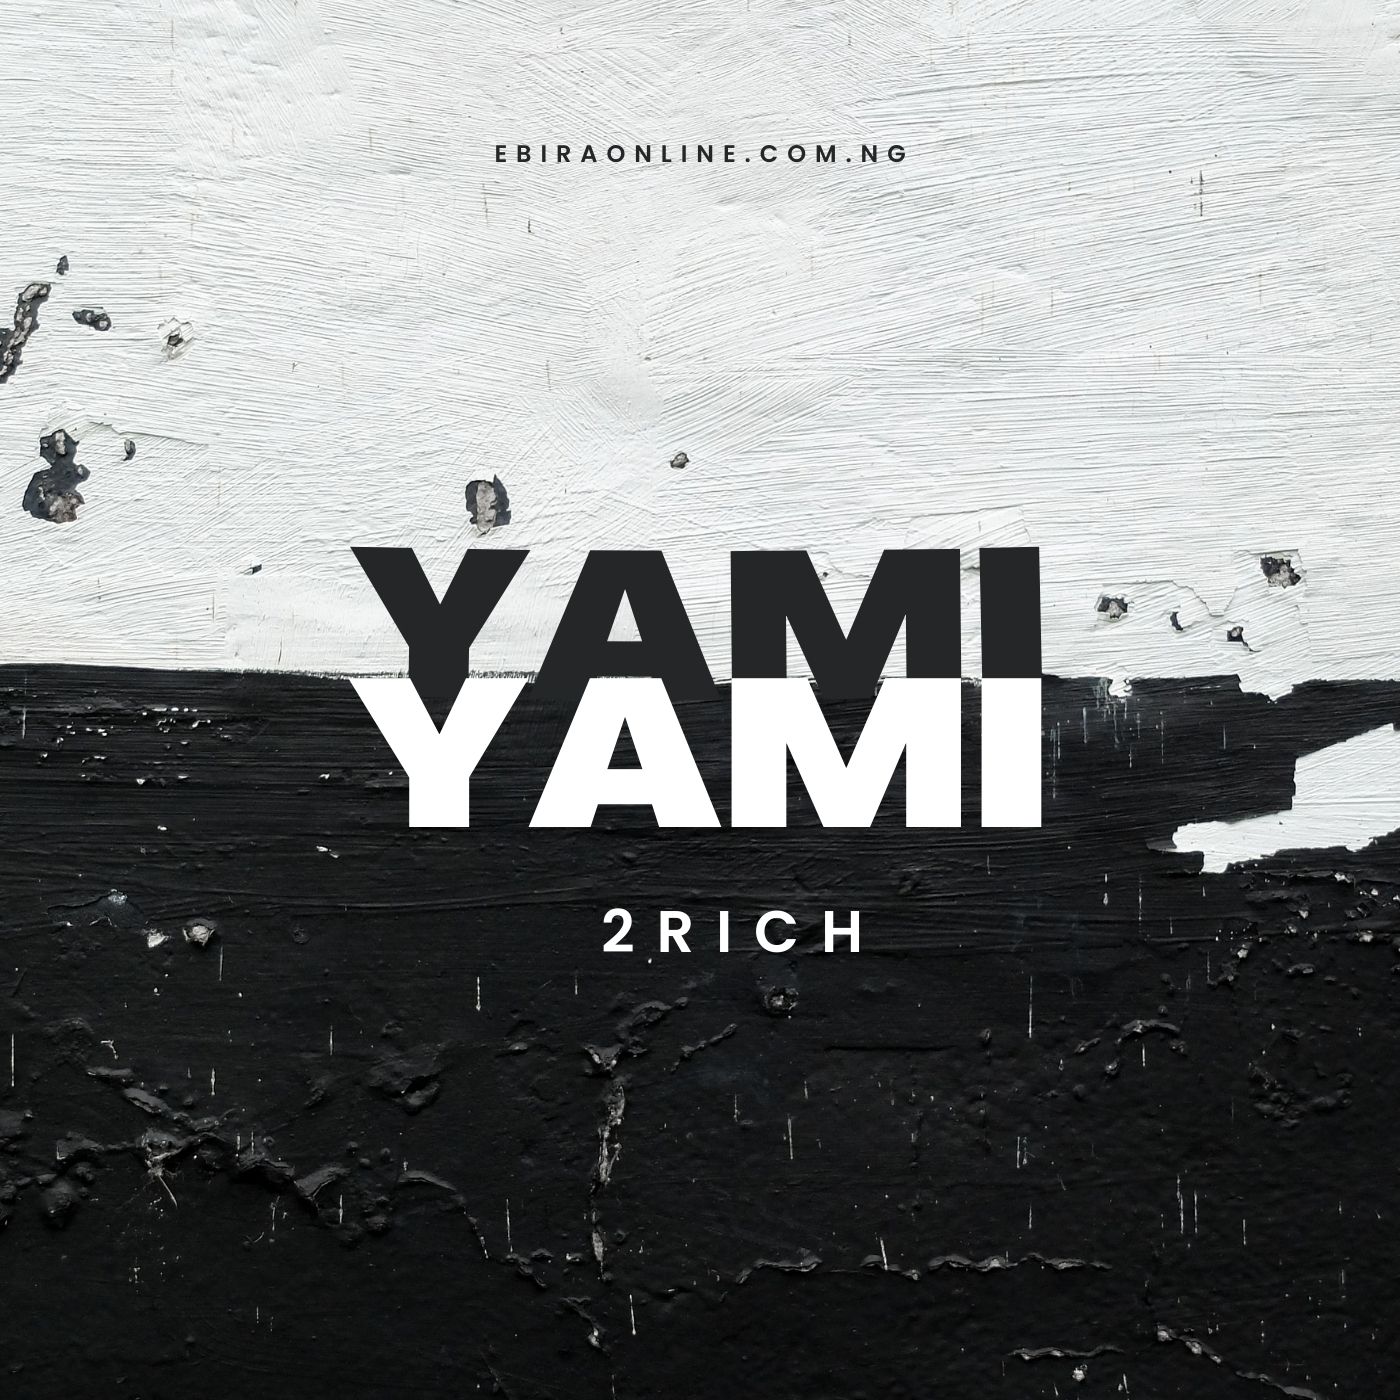 Ebira Music: 2Rich - Yami Yami (Fast Fast)